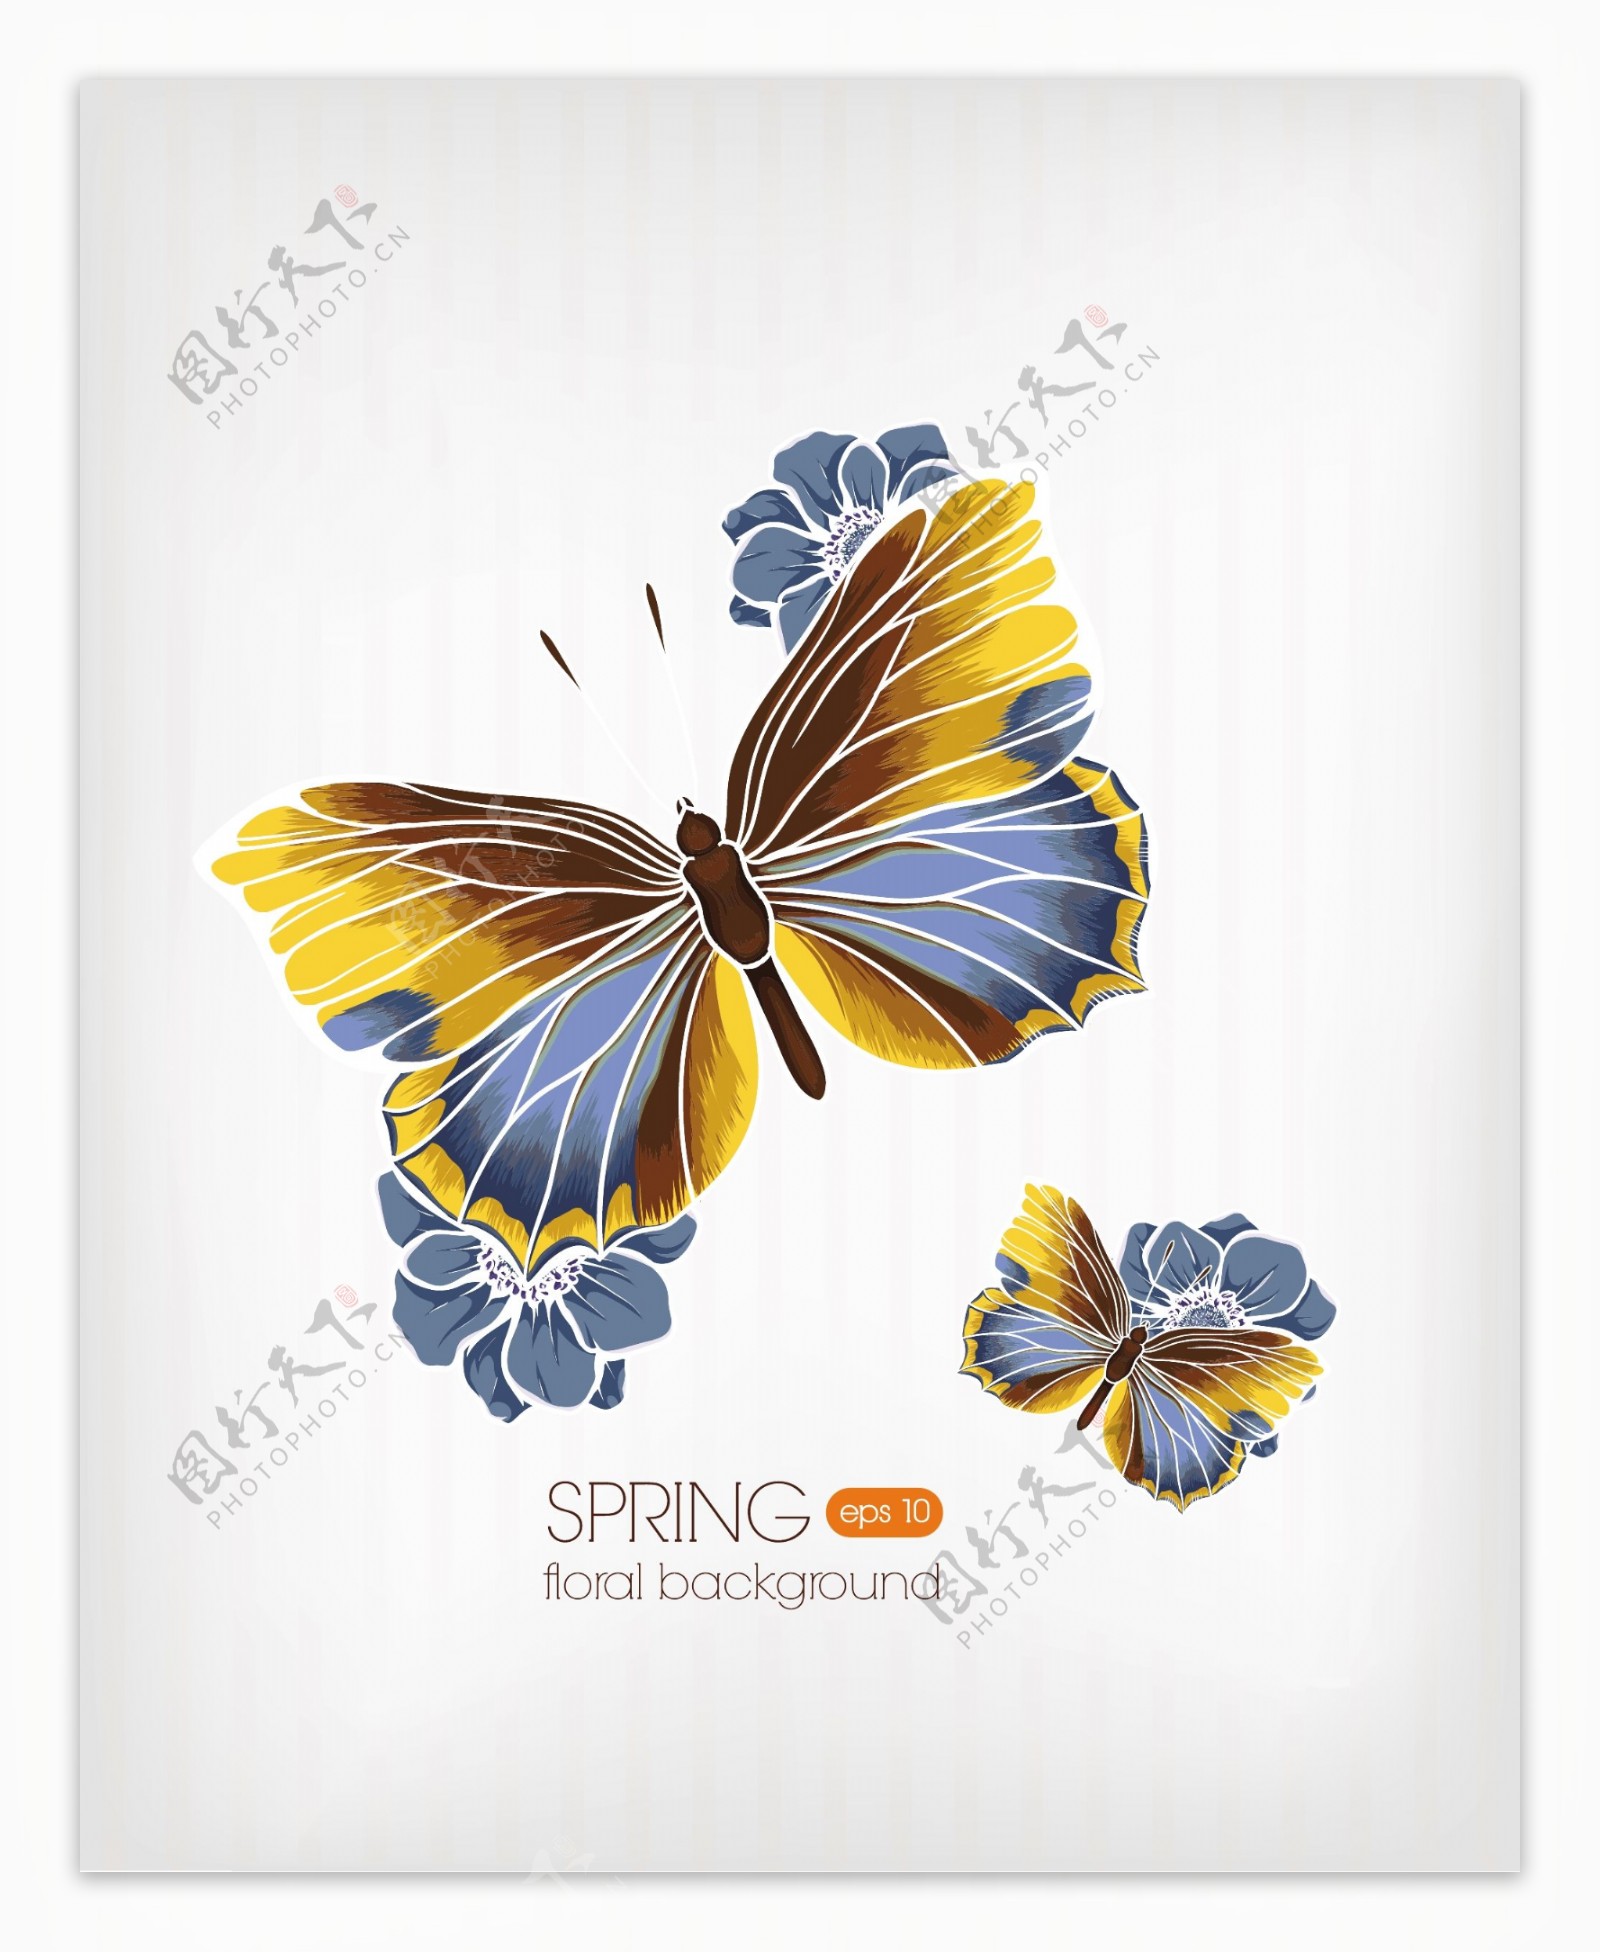 美丽的蝴蝶背景矢量素材02